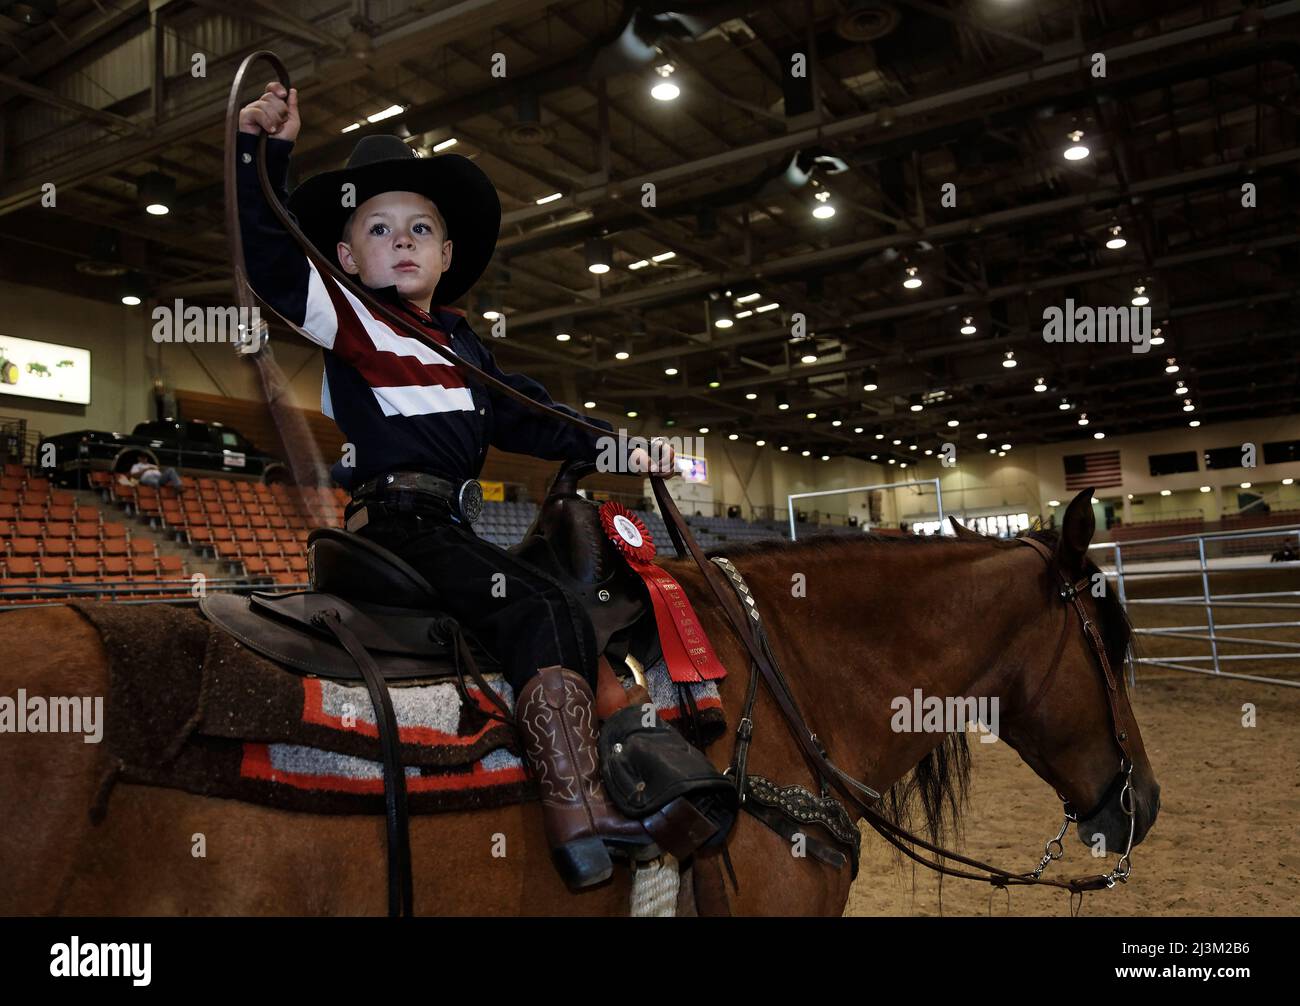 Un jeune cow-boy participe à un spectacle de chevaux sur son mustang sauvage; Reno, Nevada, États-Unis d'Amérique Banque D'Images